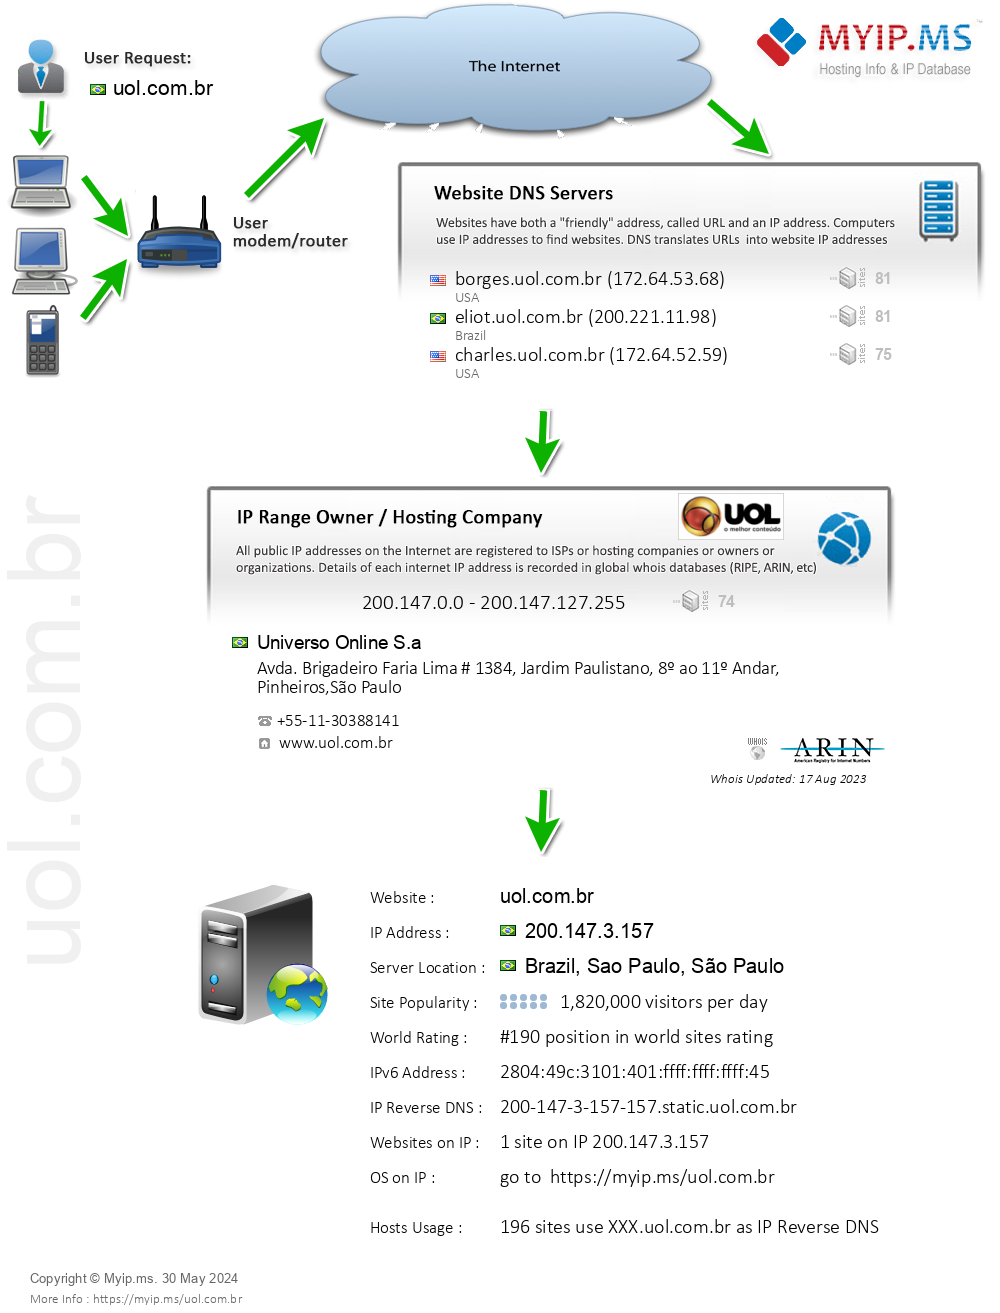 Uol.com.br - Website Hosting Visual IP Diagram